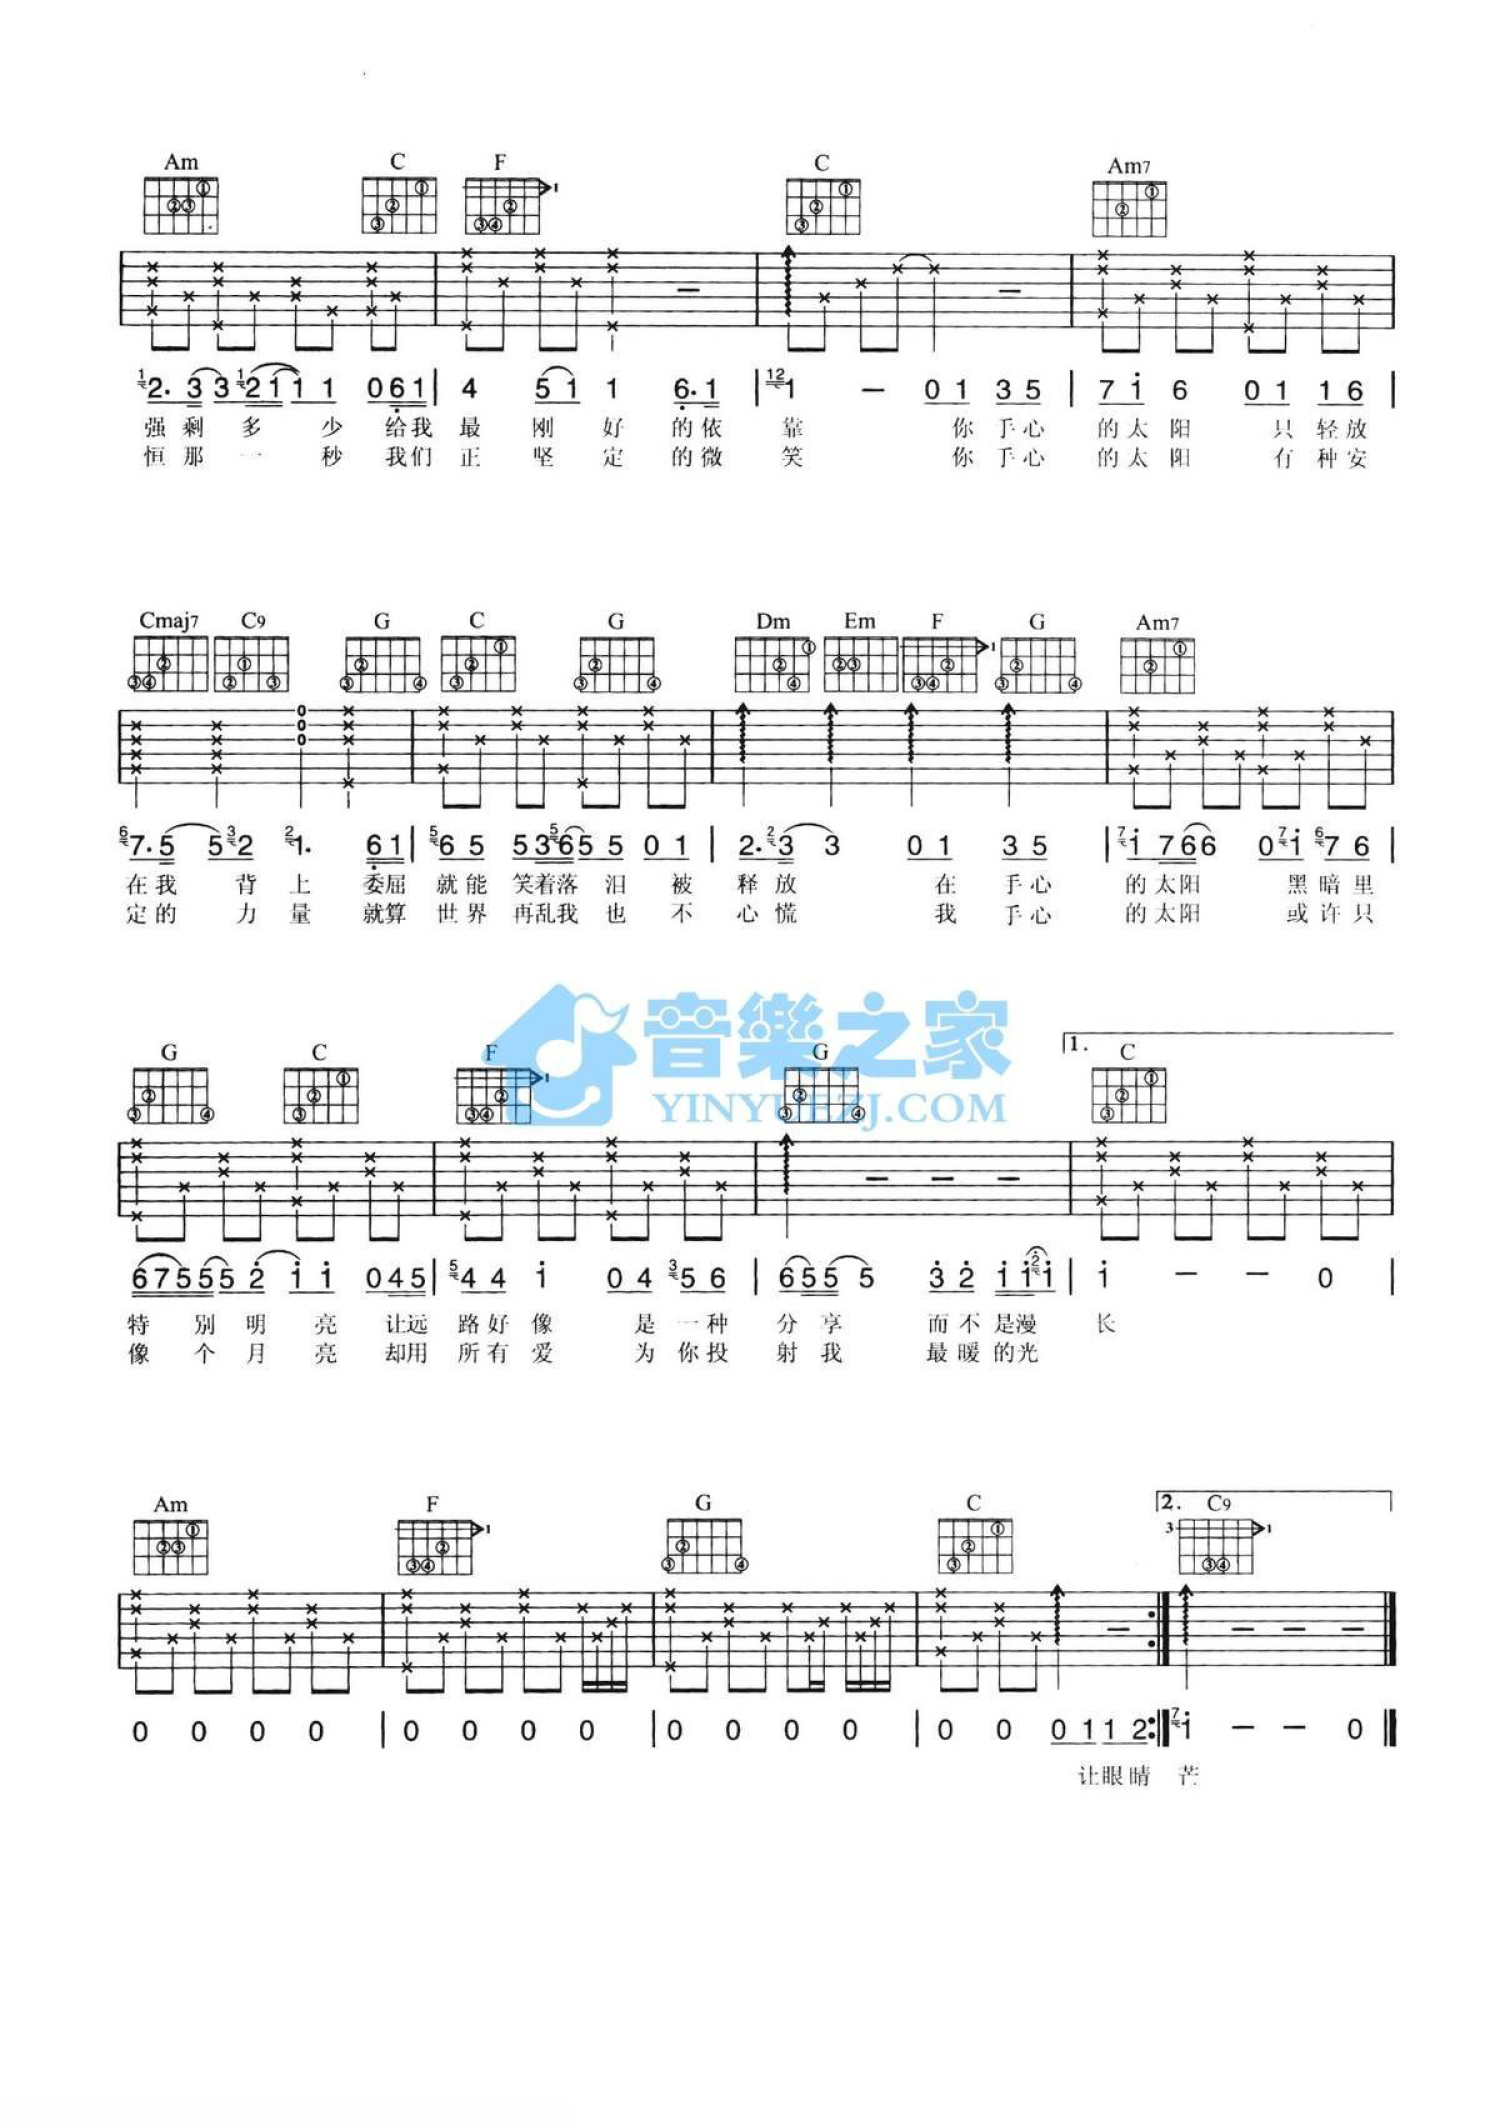 小孟的音樂教室: 丁噹-手掌心 /簡譜/吉他譜/烏克麗麗譜